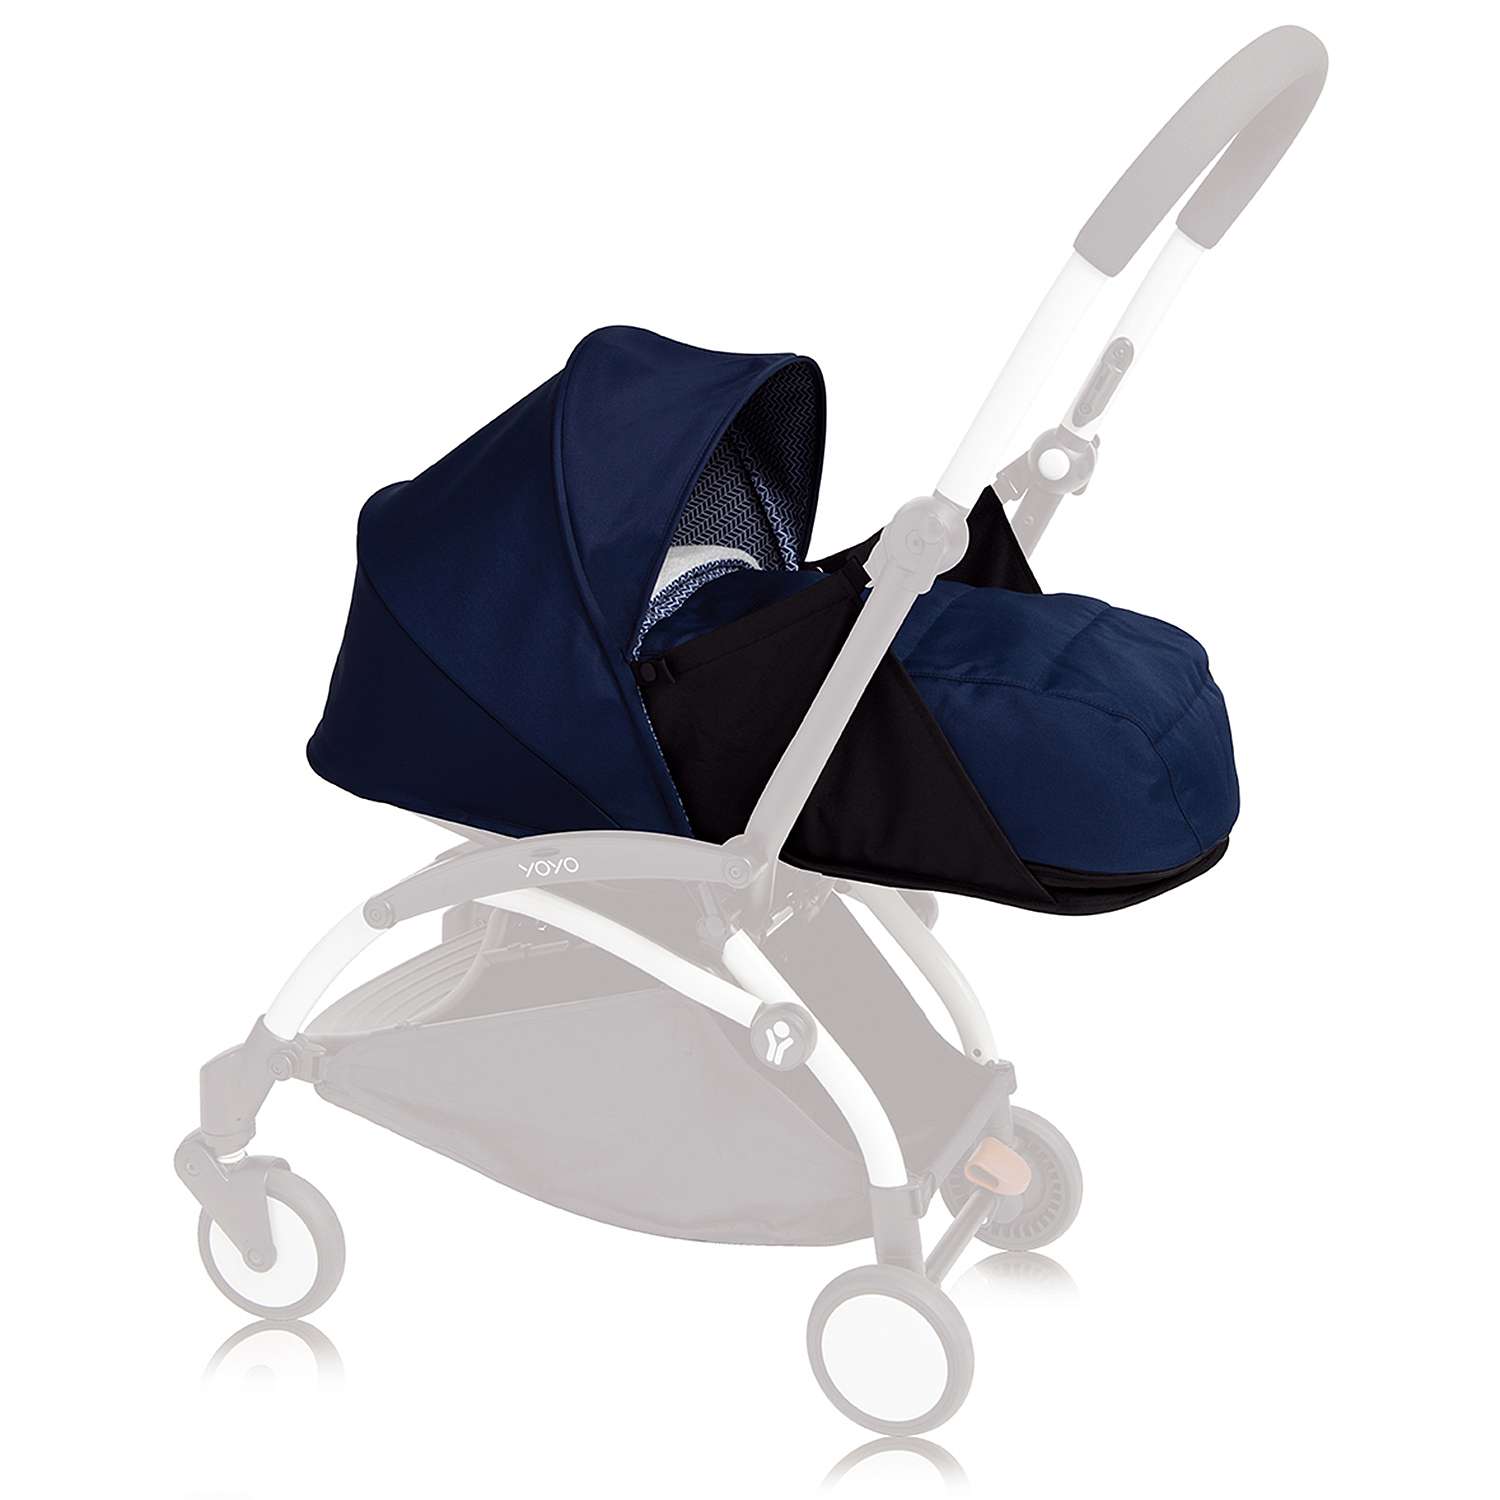 Комплект люльки для новорожденного к коляске Babyzen Yoyo Plus Темно-синий BZ10107-11 - фото 1